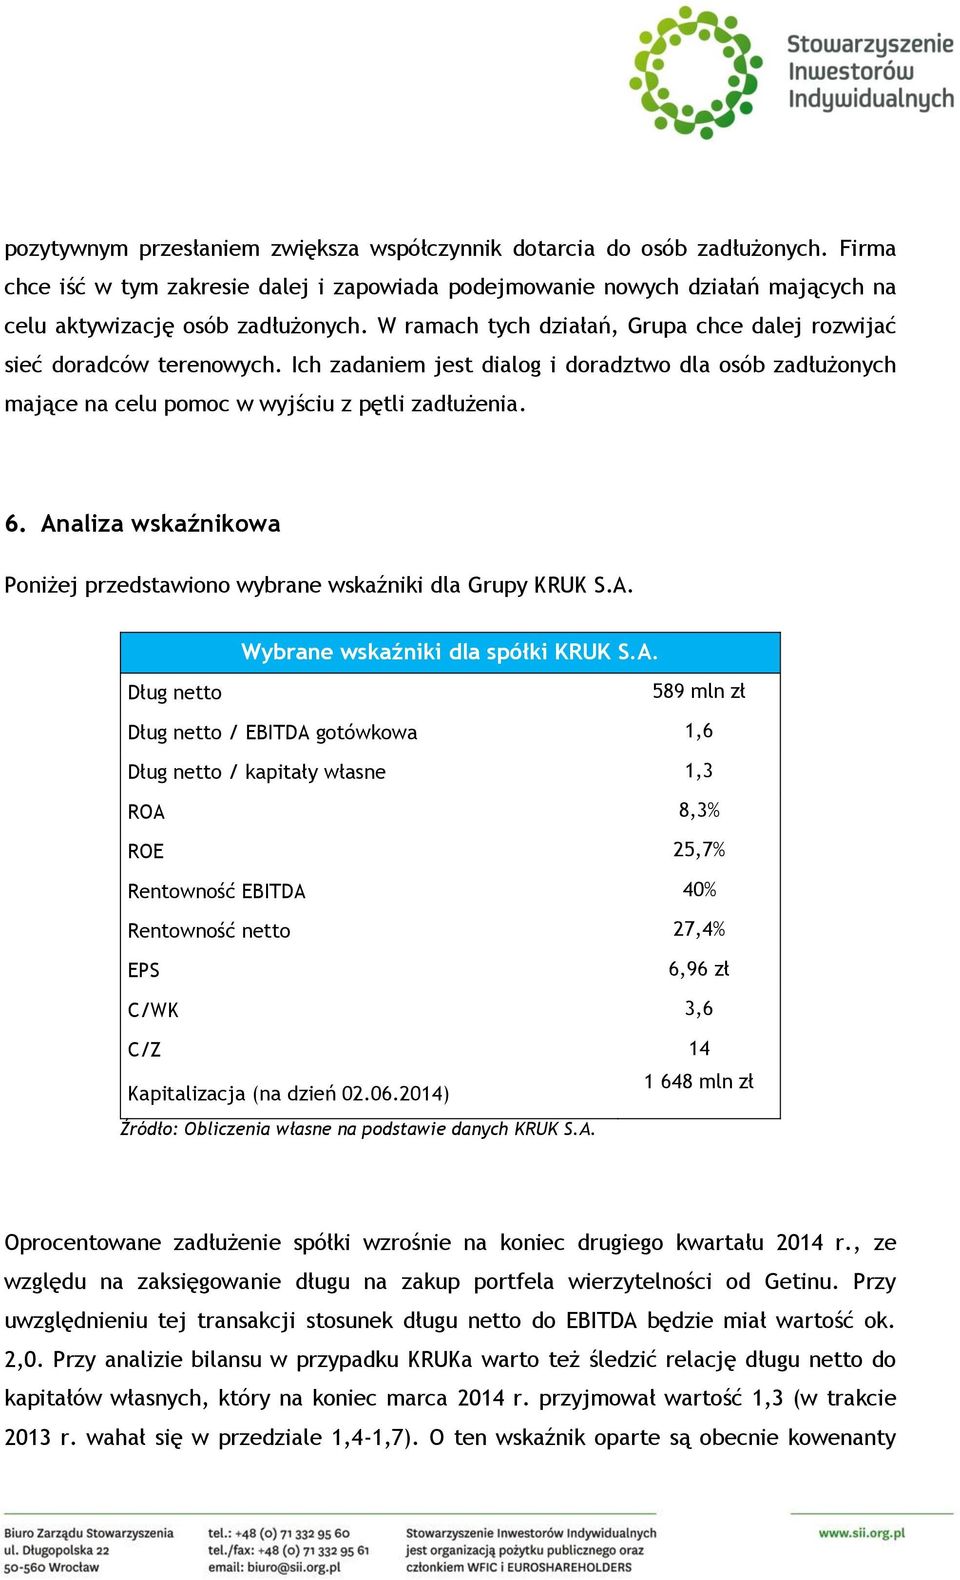 Analiza wskaźnikowa Poniżej przedstawiono wybrane wskaźniki dla Grupy KRUK S.A. Wybrane wskaźniki dla spółki KRUK S.A. Dług netto 589 mln zł Dług netto / EBITDA gotówkowa 1,6 Dług netto / kapitały